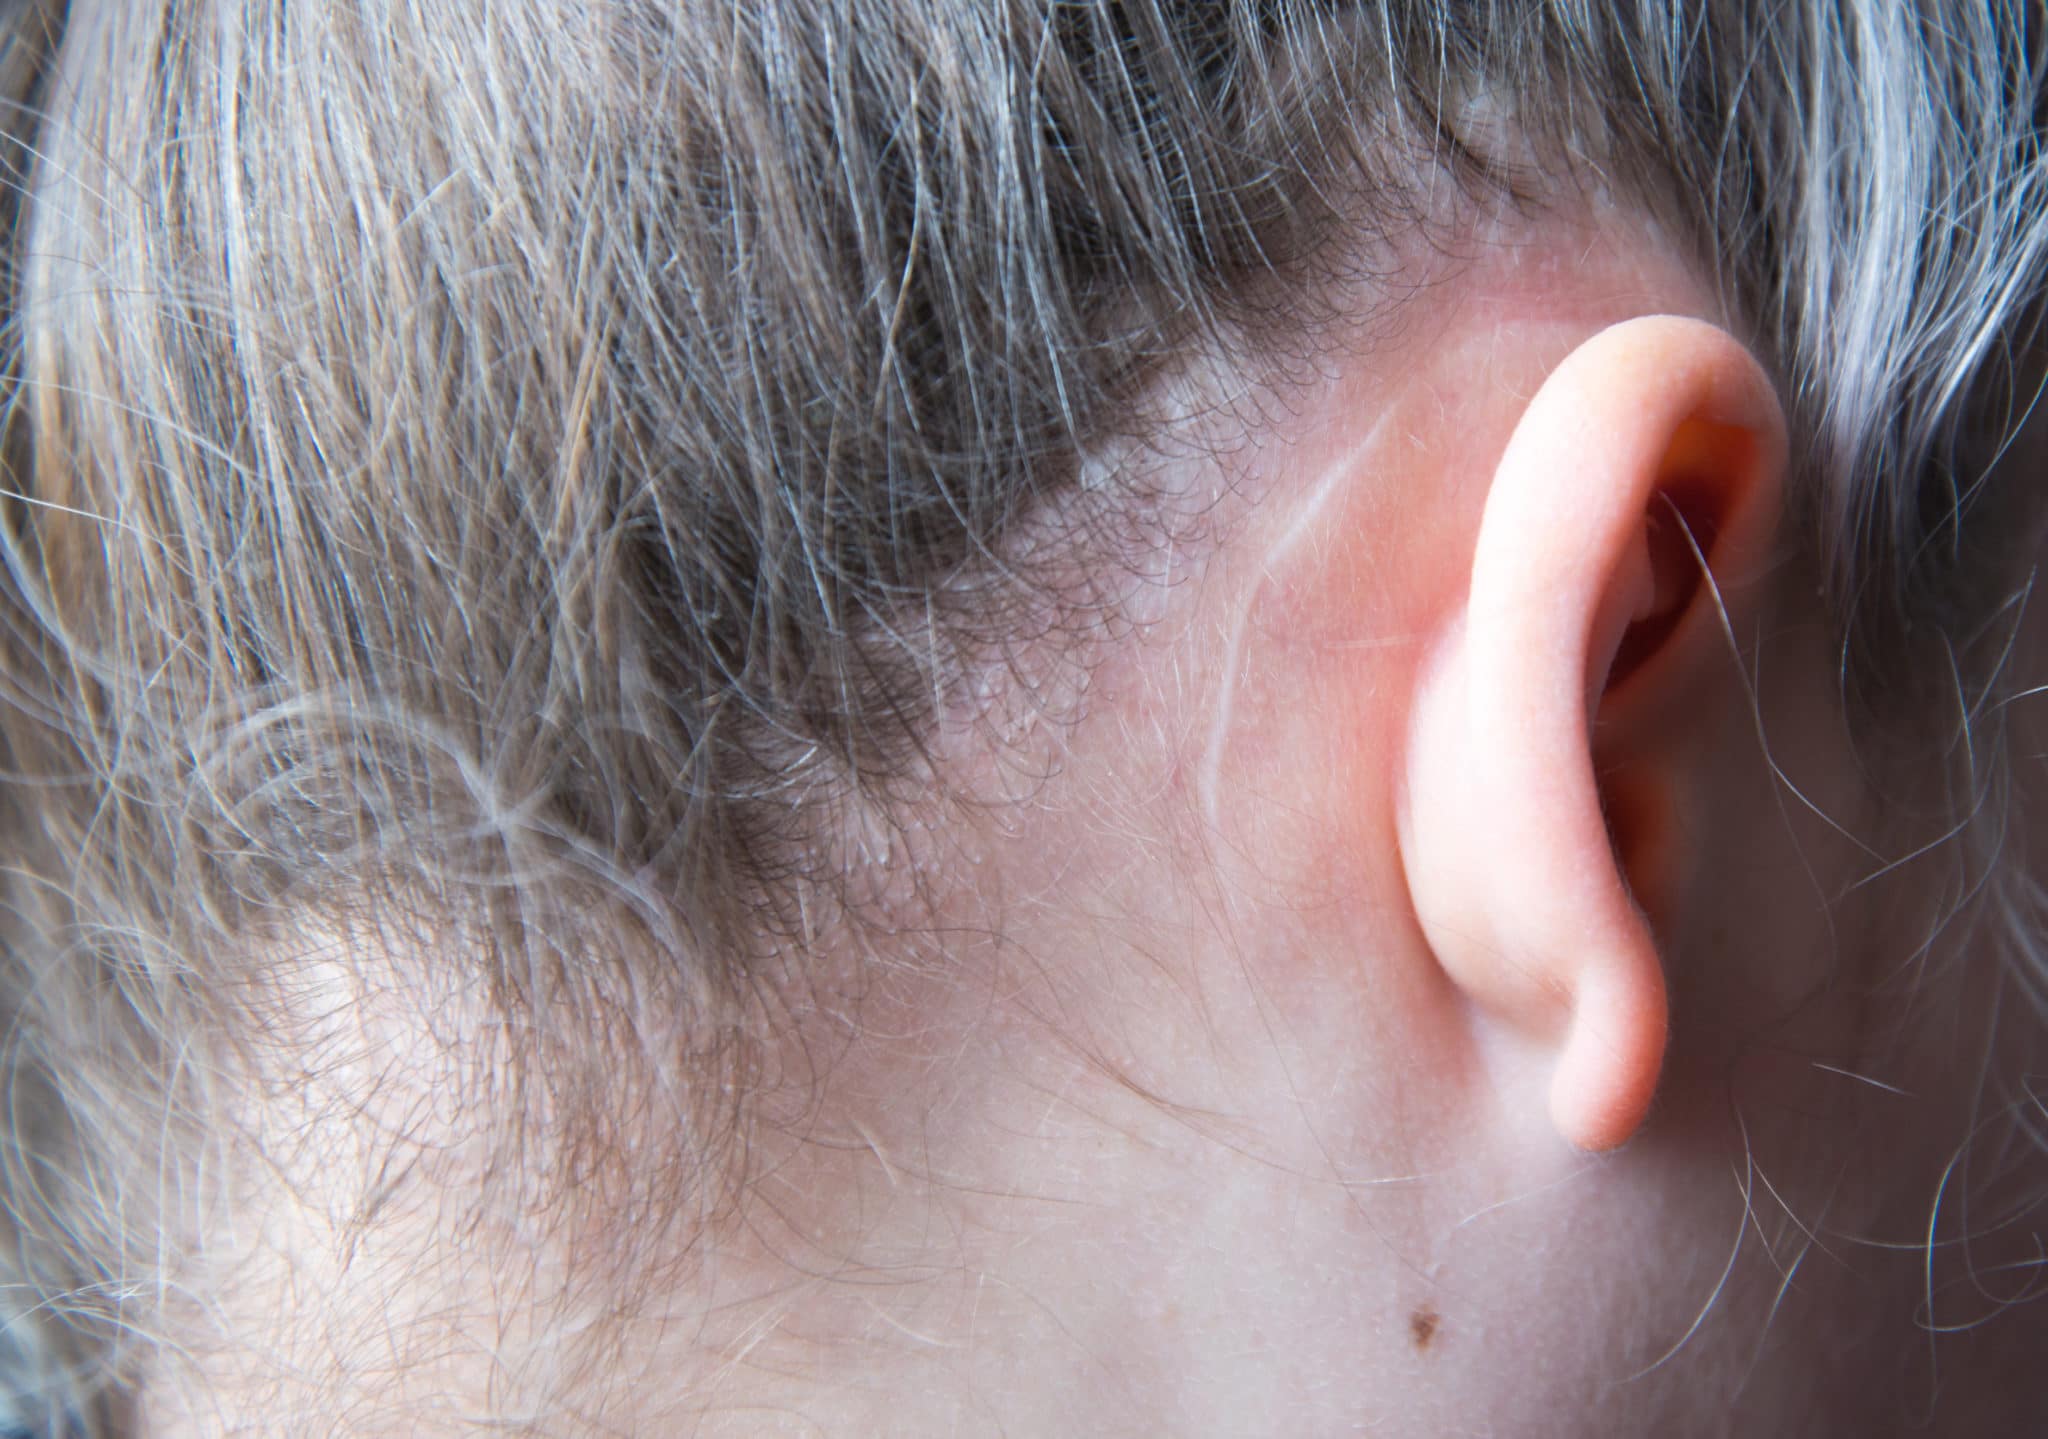 Operation scar behind ear